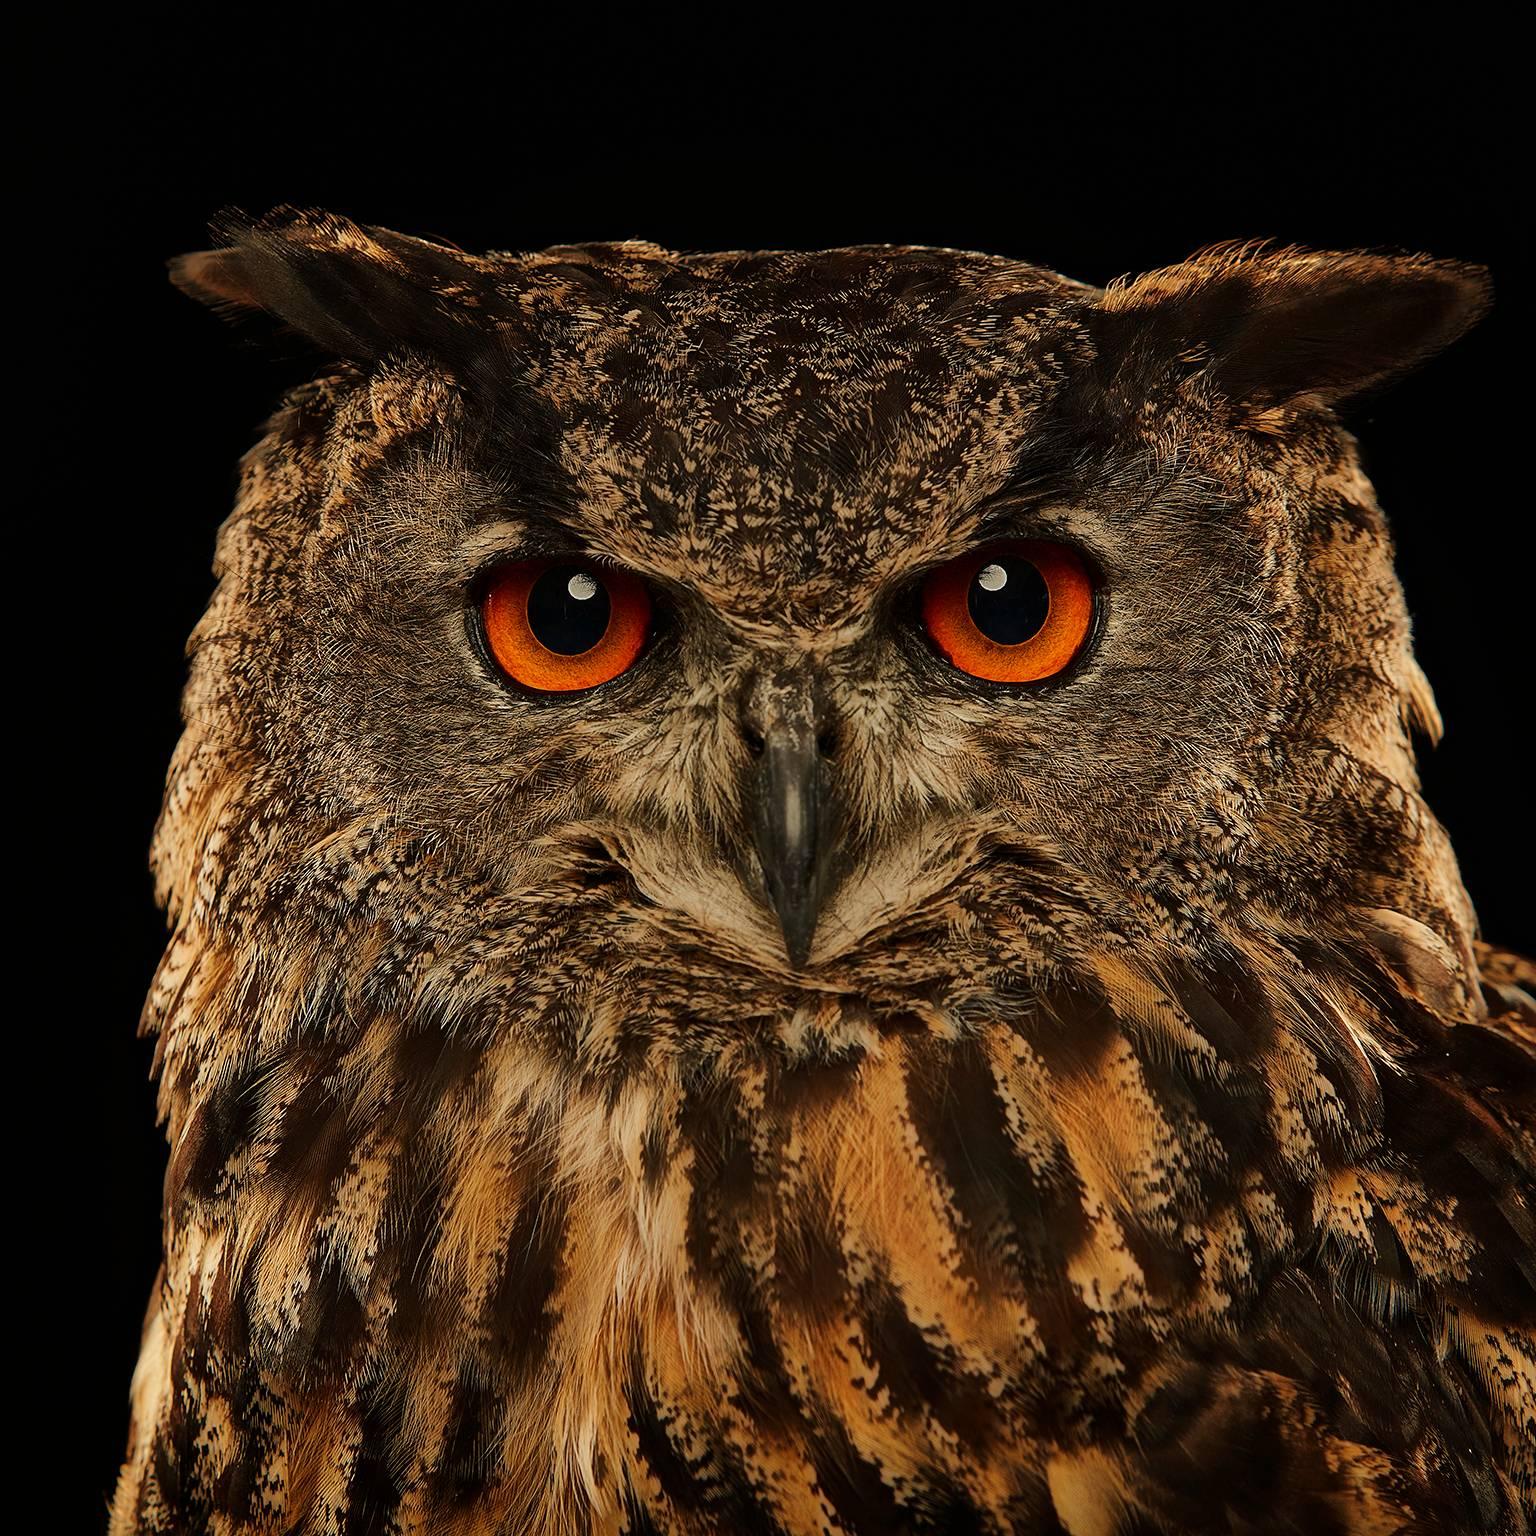 Birds of Prey - Eurasian Eagle Owl No. 13 - Photograph by Chris Gordaneer